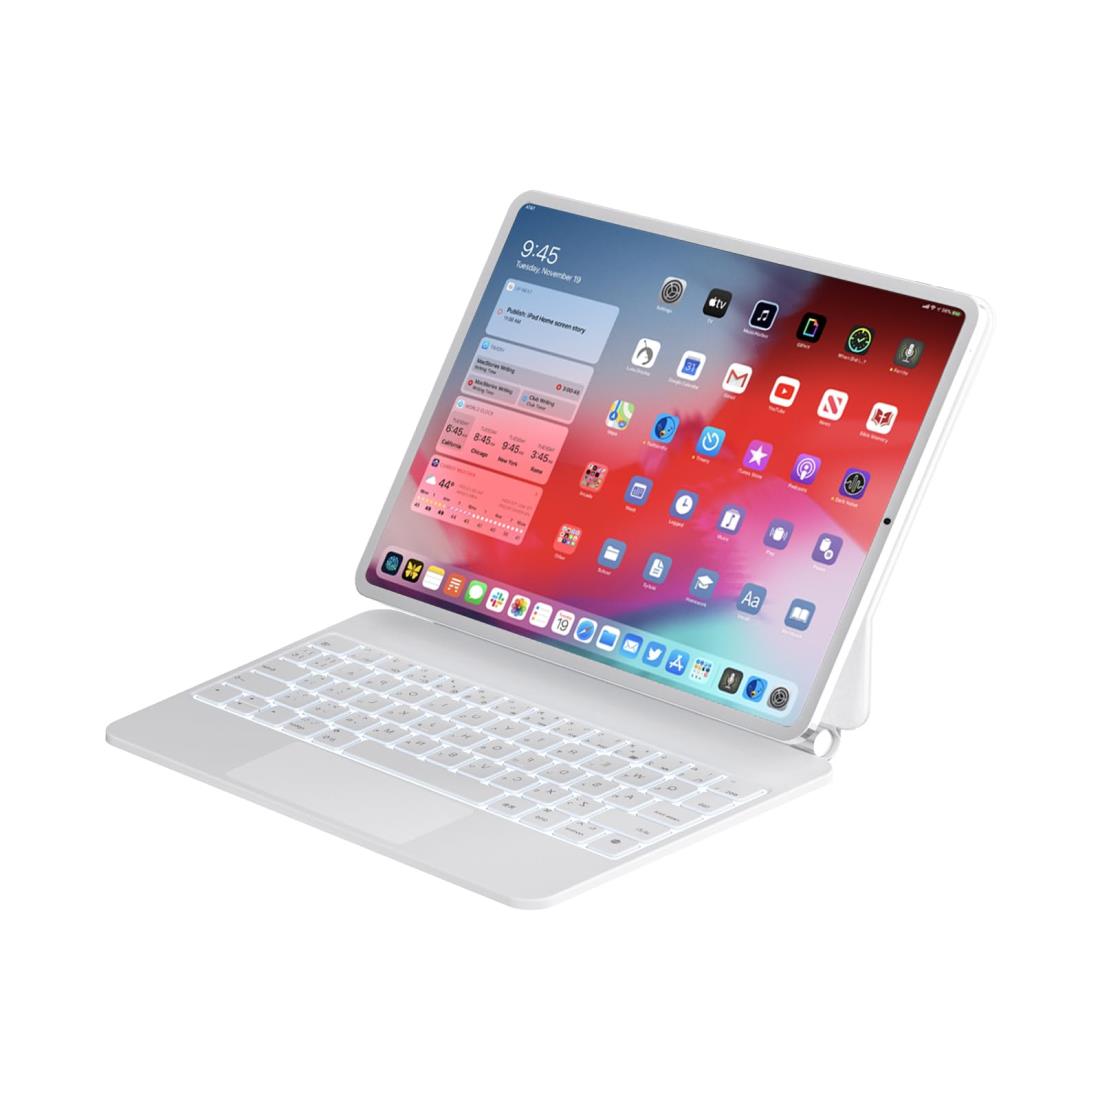 マジックキーボード MBODMI iPad用キーボード iPad Air4/5 10.9インチ通用 iPad Pro 11インチ スマートキーボード トラックパッド搭載 磁気吸着 7色バックライト付き 日本語配列 日本語取扱説明書付き (白, iPad Pro11 Air5/410.9inch)